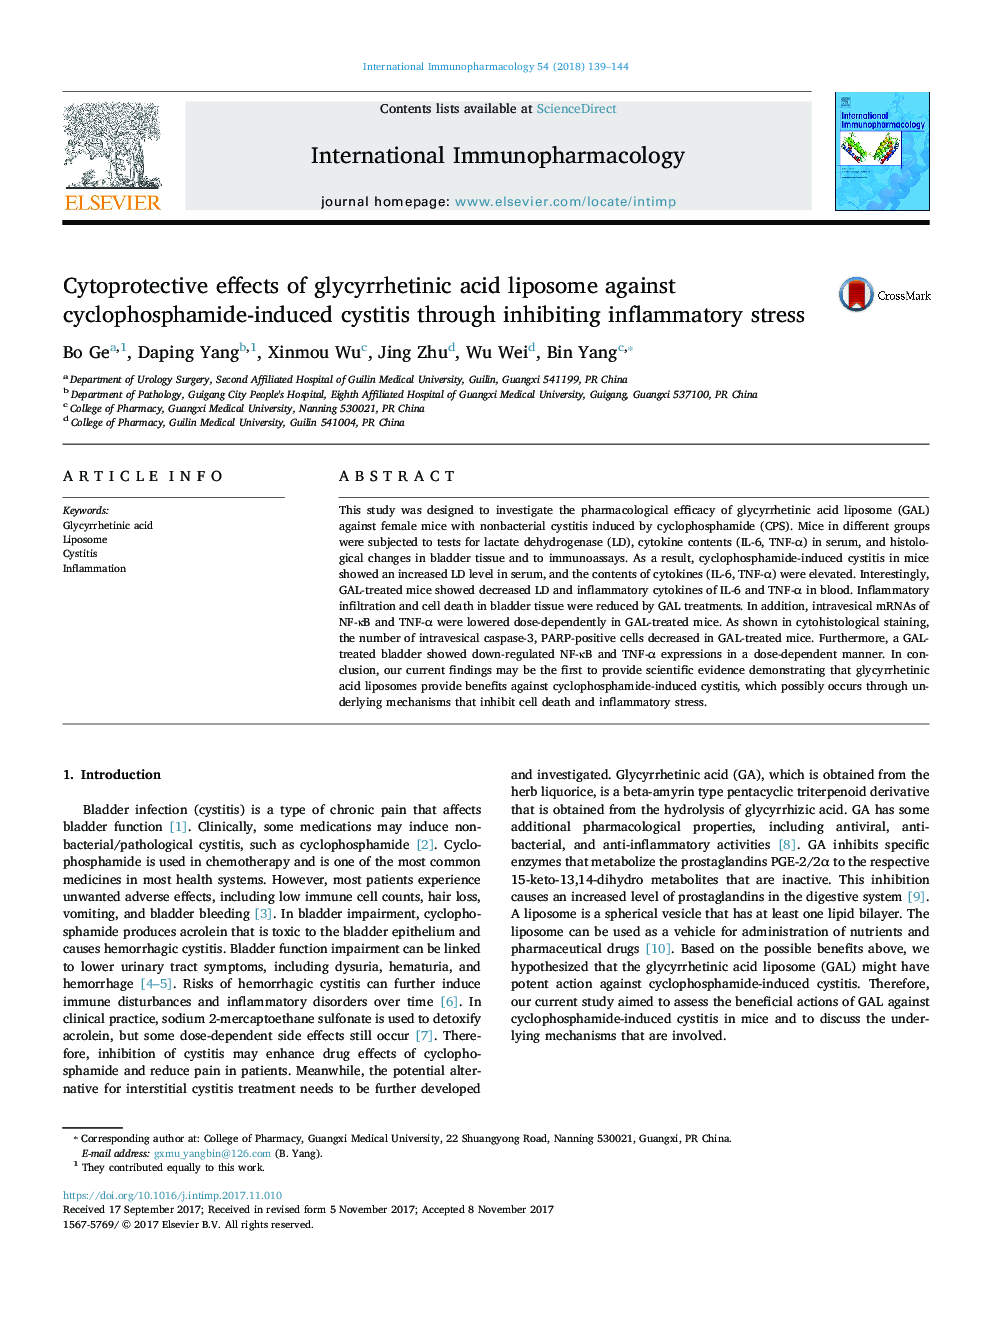 اثرات سیتوپروتئین کننده لیپوزوم اسید گلیسریتینیک اسید در برابر سیتیت ناشی از سیکلوفسفامید از طریق مهار استرس التهابی 